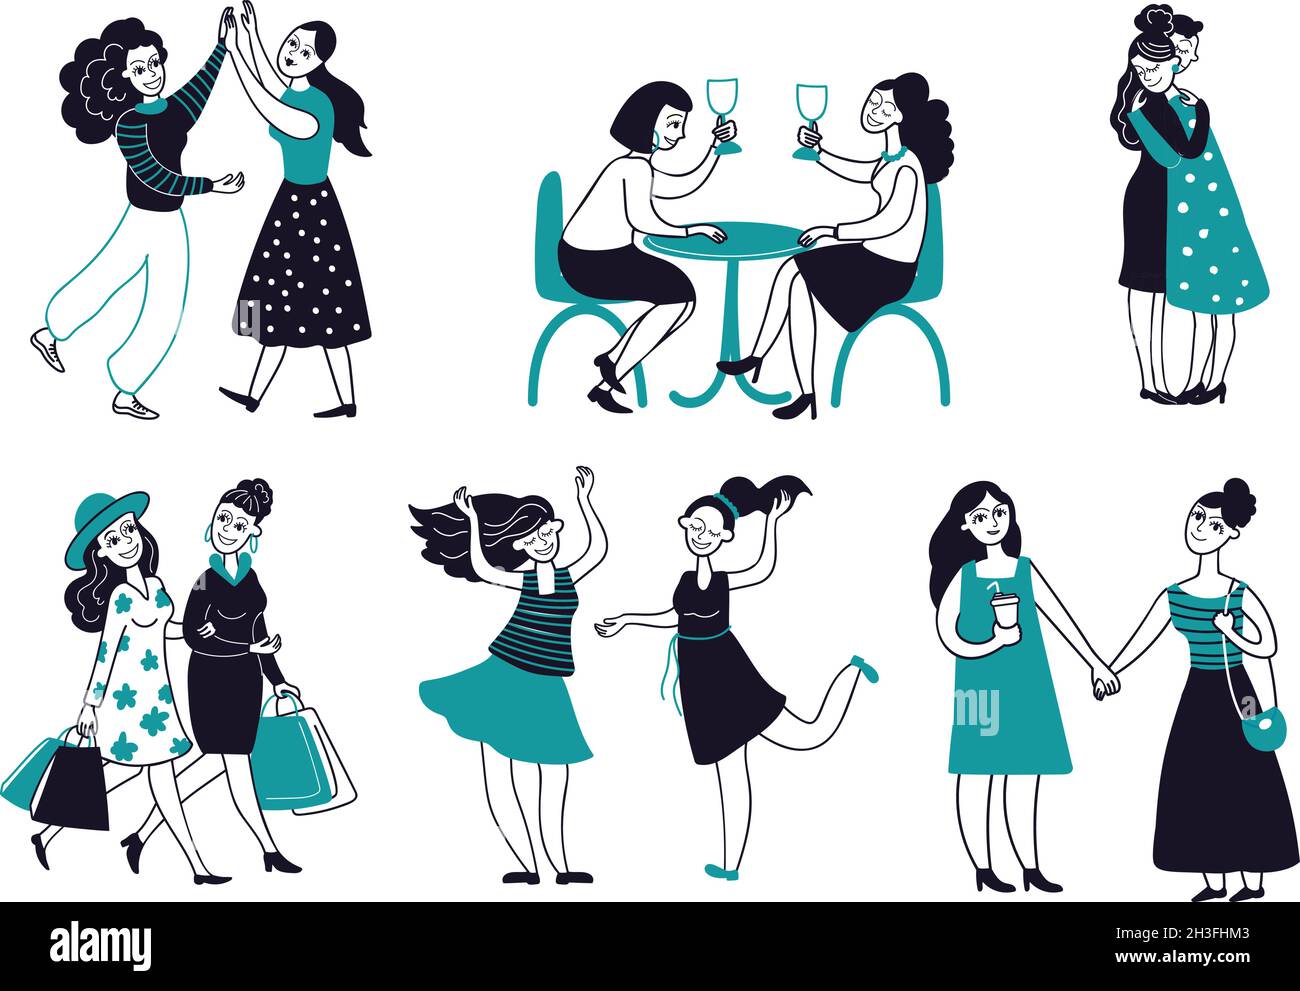 Weibliche Freundschaft. Mädchen Freunde zusammen, Frauen trinken Wein umarmt Treffen. Cartoon Feministinnen Charaktere, anständig lächelnde Frau tanzen Vektor-Szenen Stock Vektor